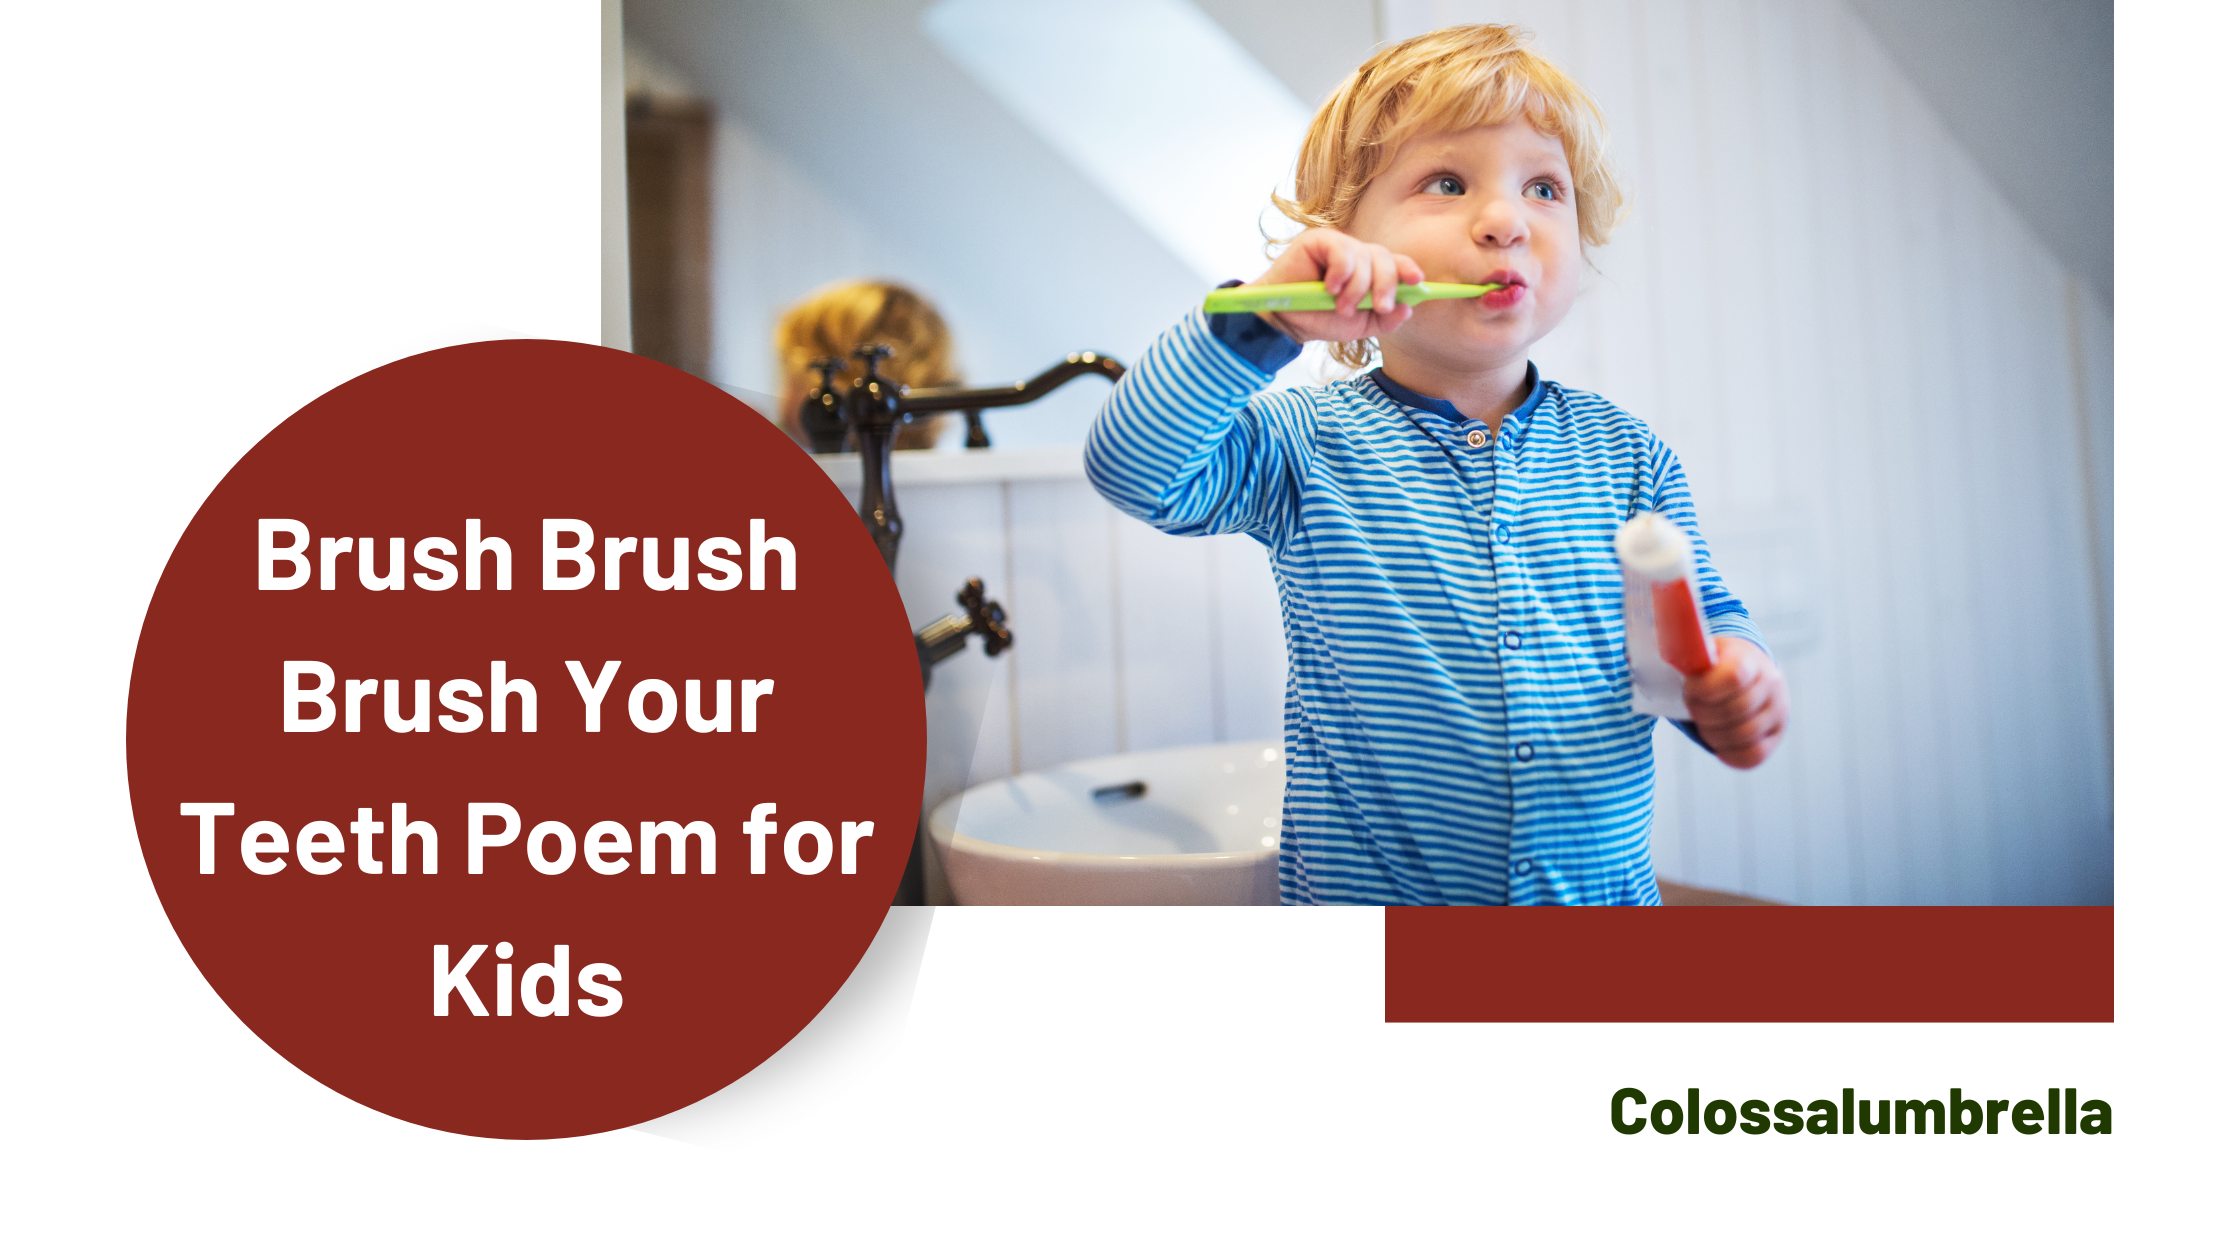 Easy Brush Brush Brush your teeth poem for kids